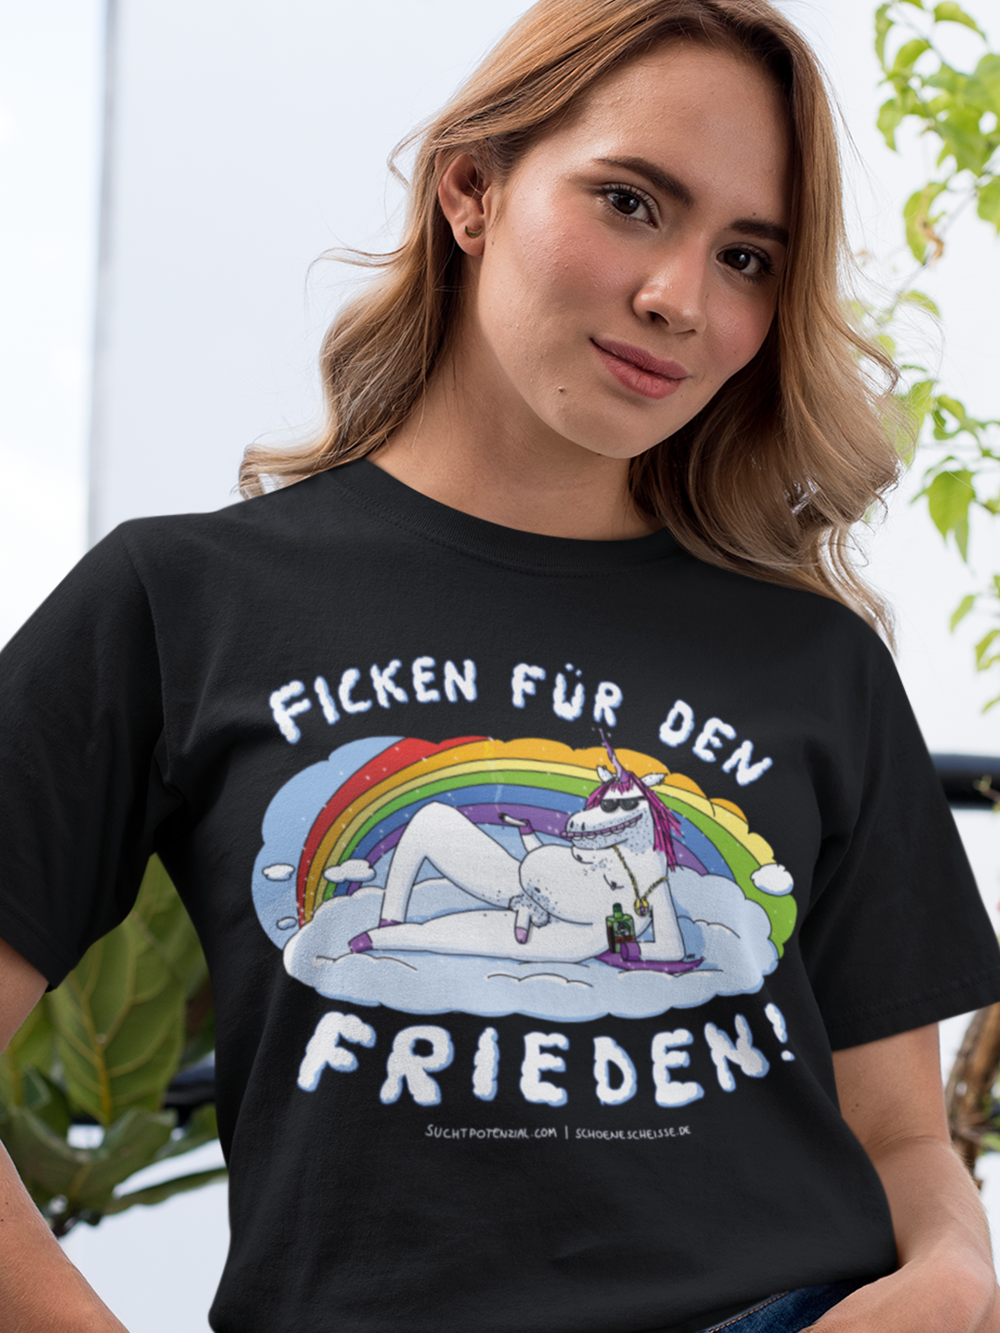 Suchtpotenzial "Ficken für den Frieden" Damen T-Shirt